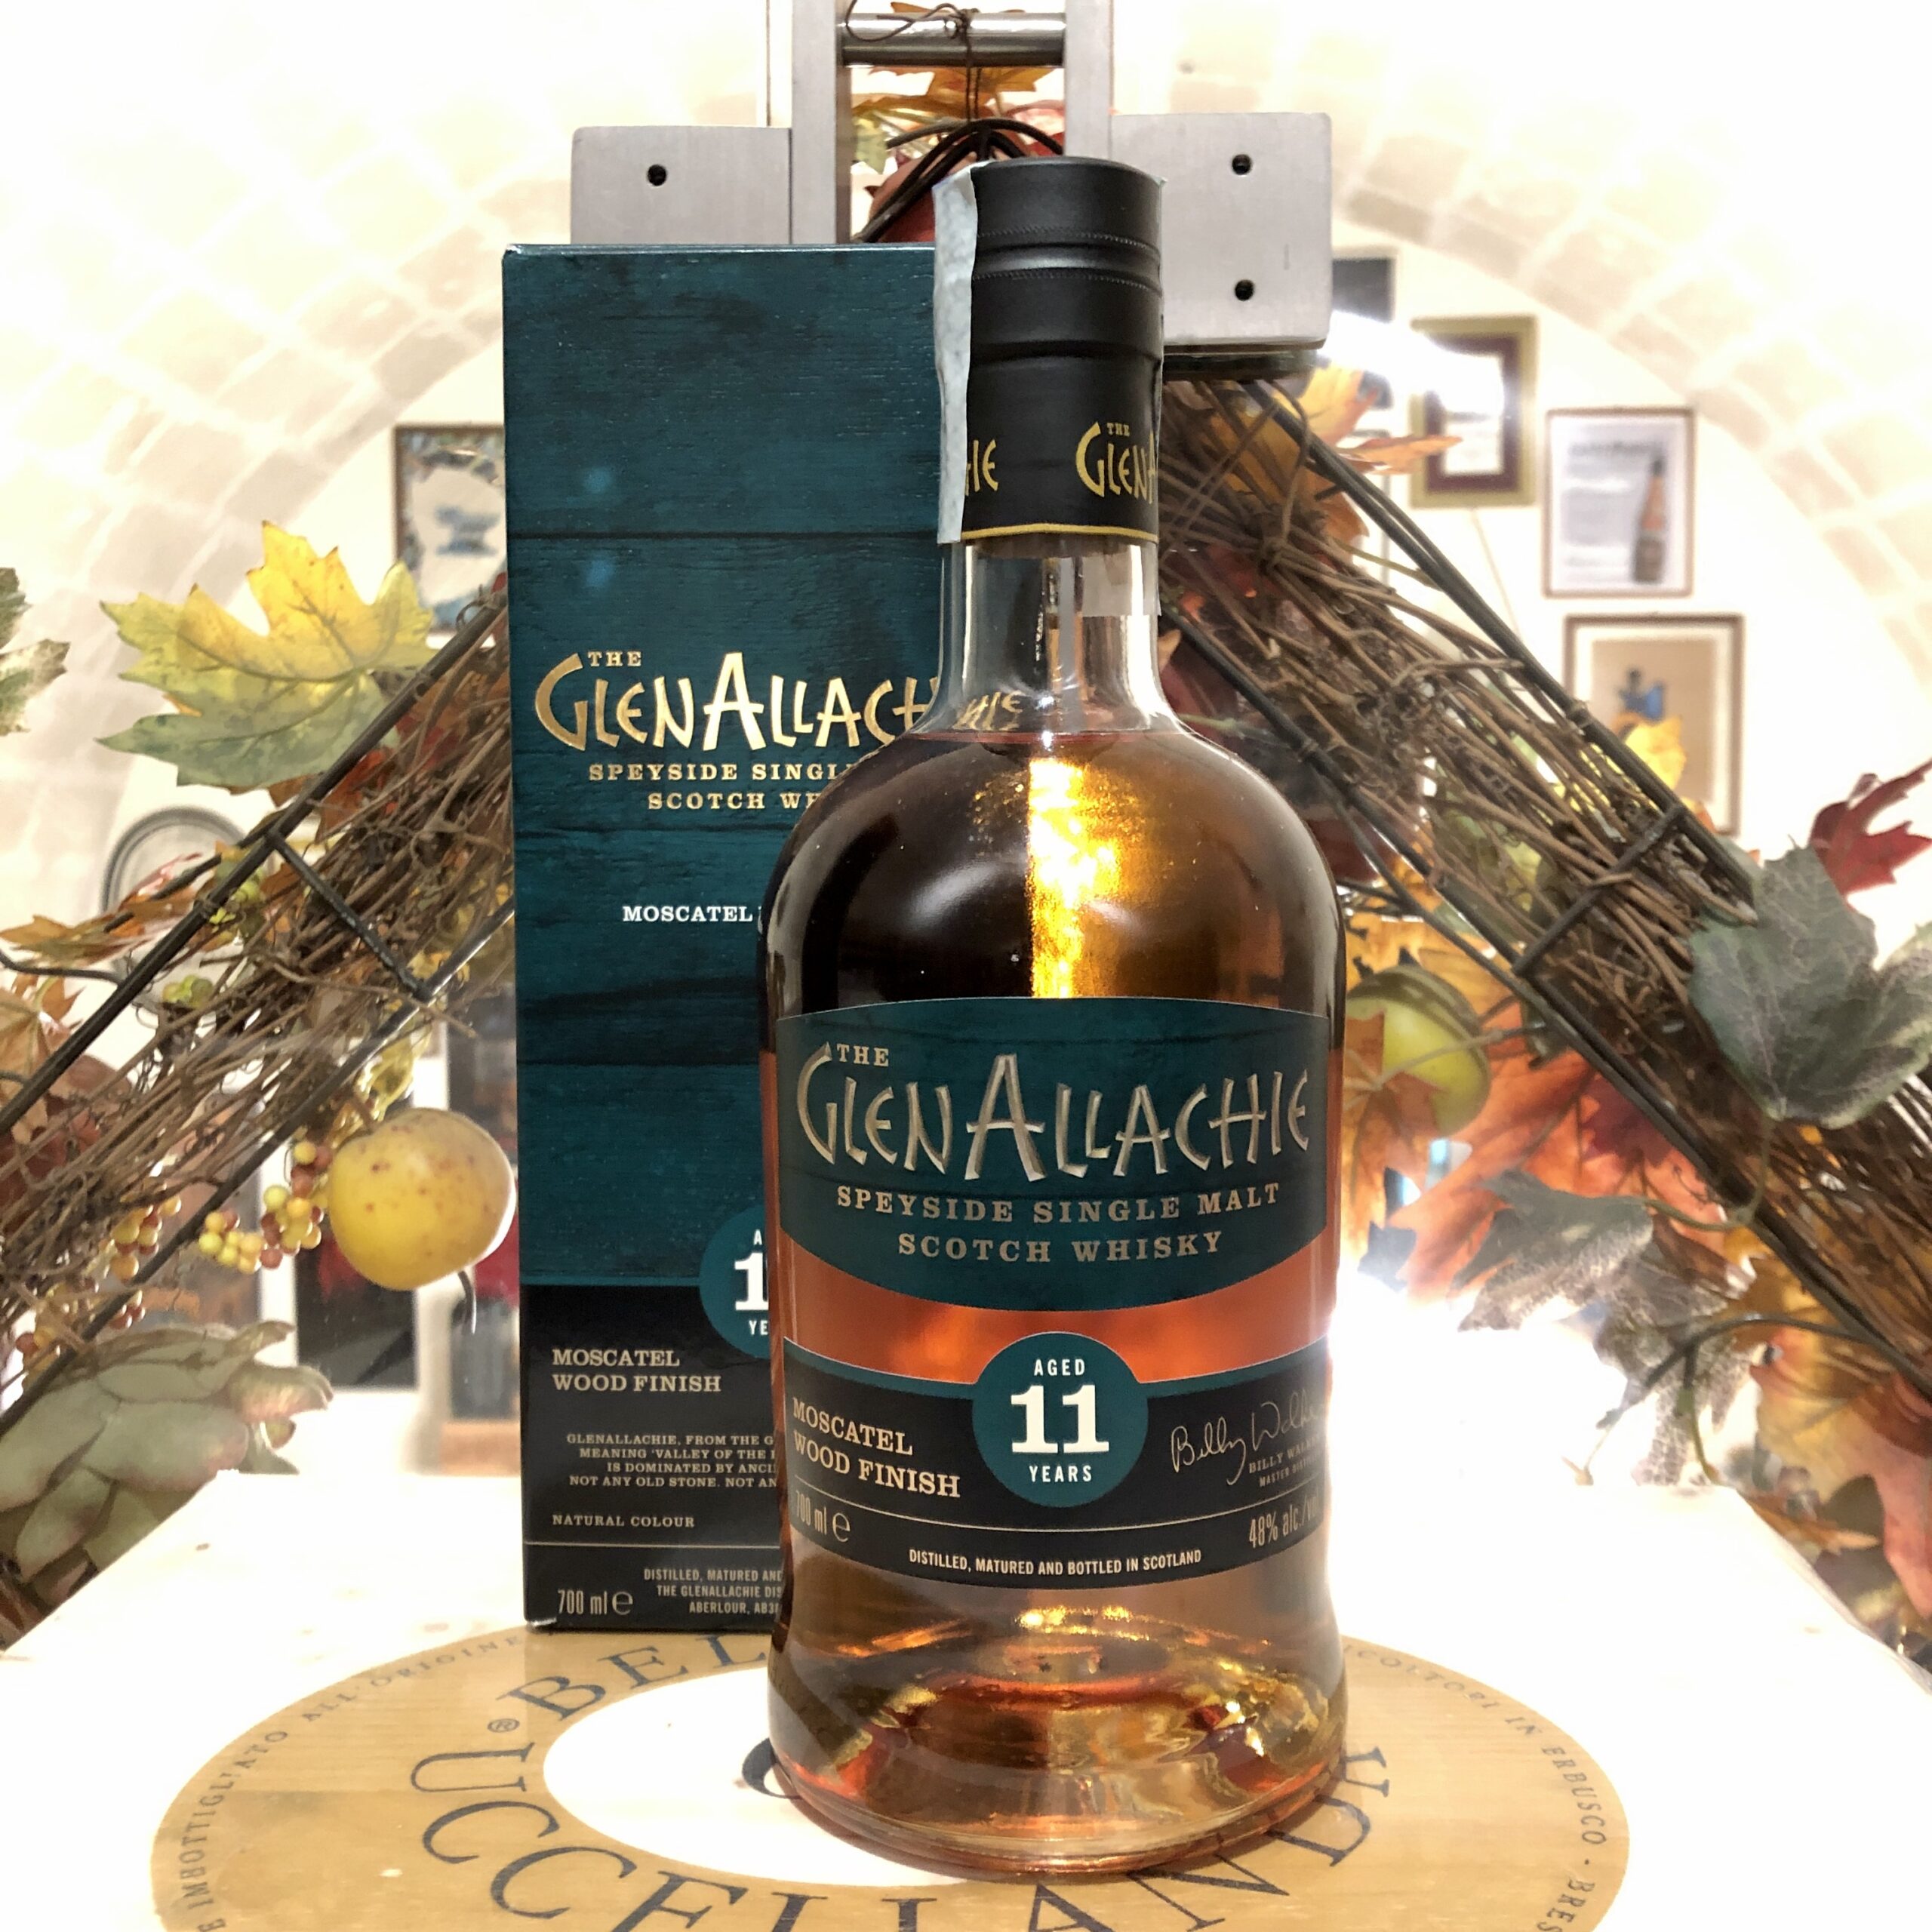 The GlenAllachie Speyside Single Malt Scotch Whisky 11 YO Moscatel Cask Wood Finish